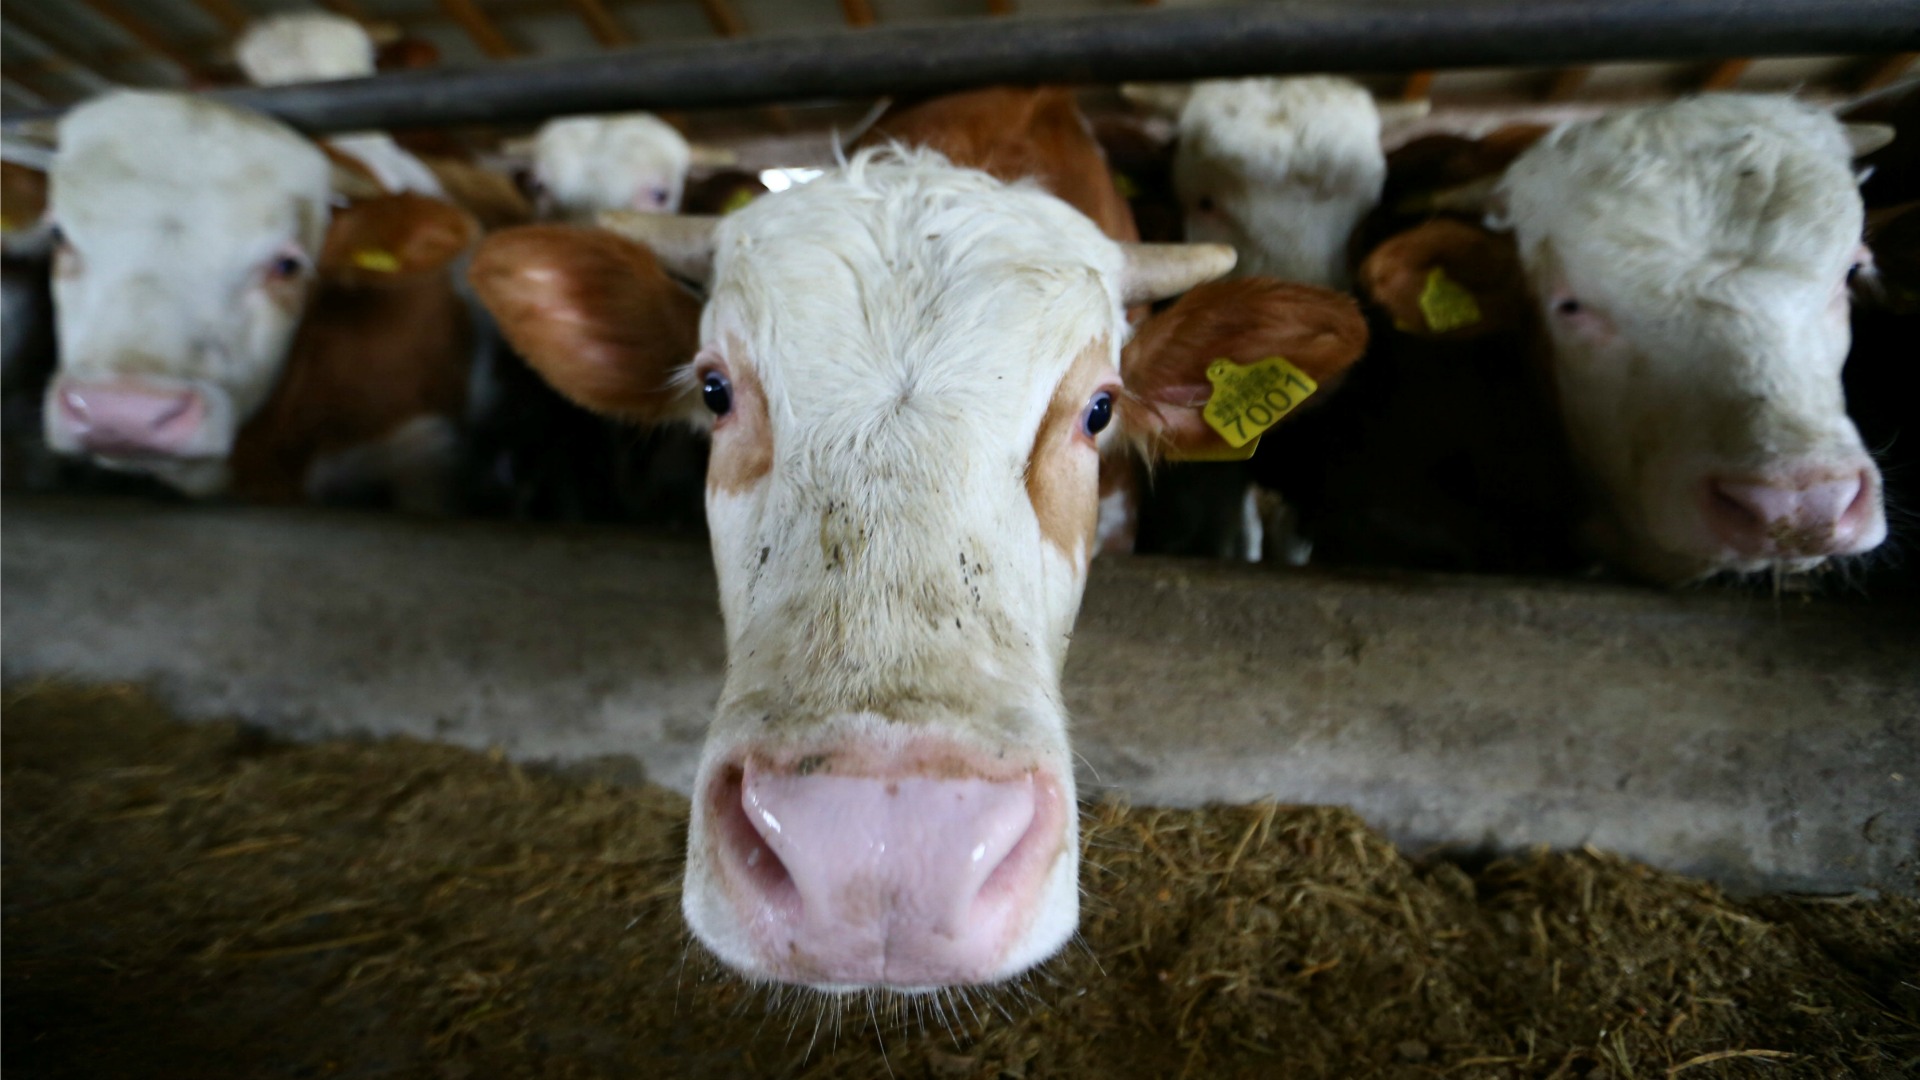 Movilización popular en España para salvar de la muerte a una vaca sin papeles